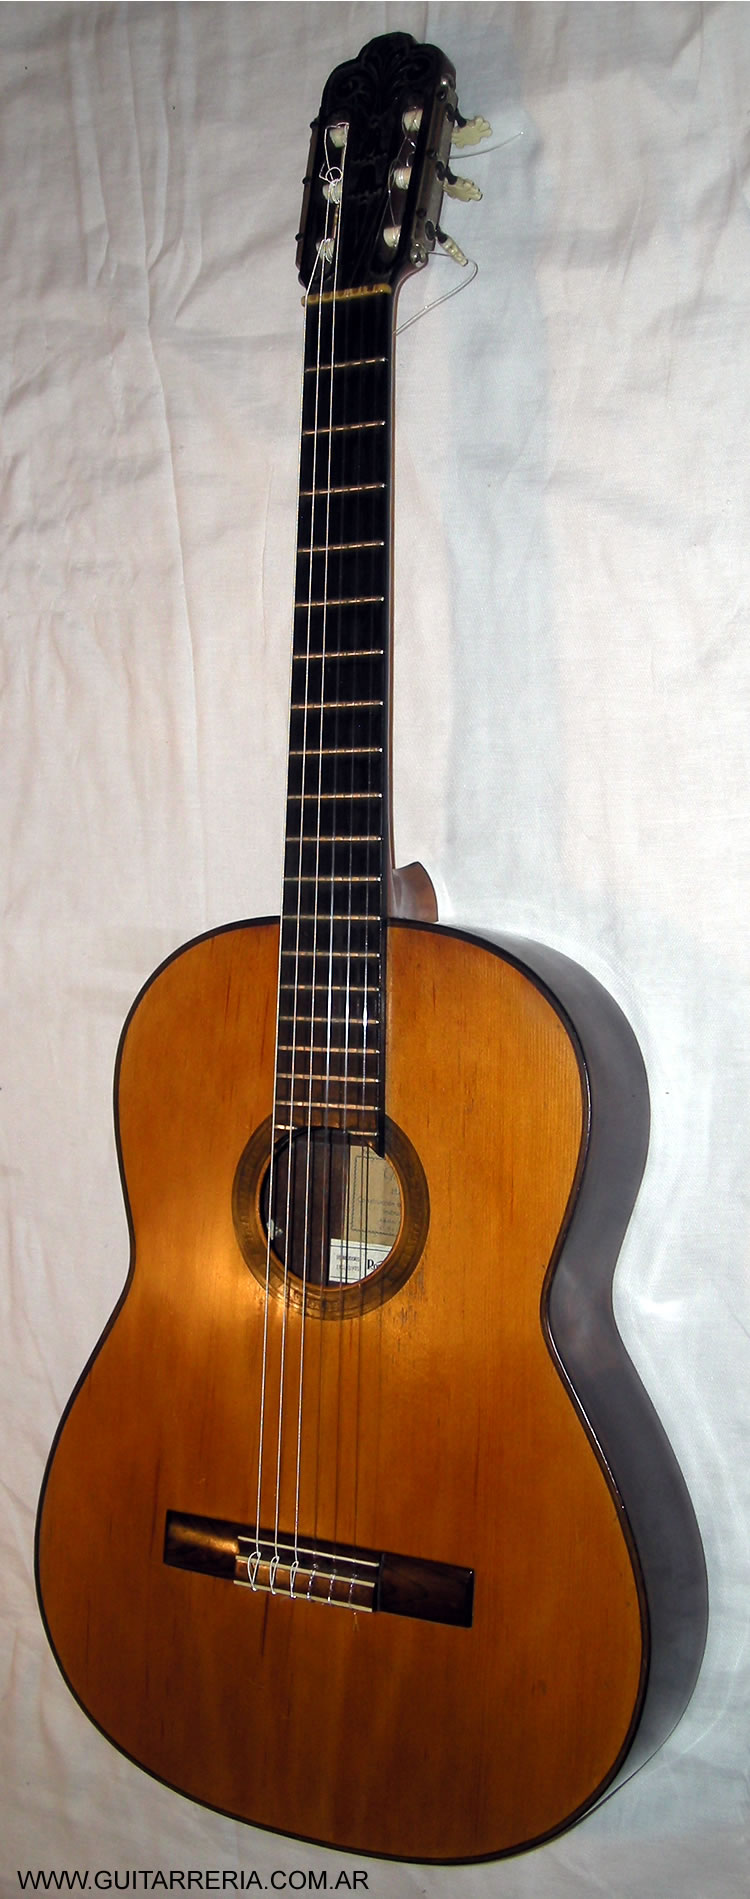 Yacopi Jose - 1951 N°159-B